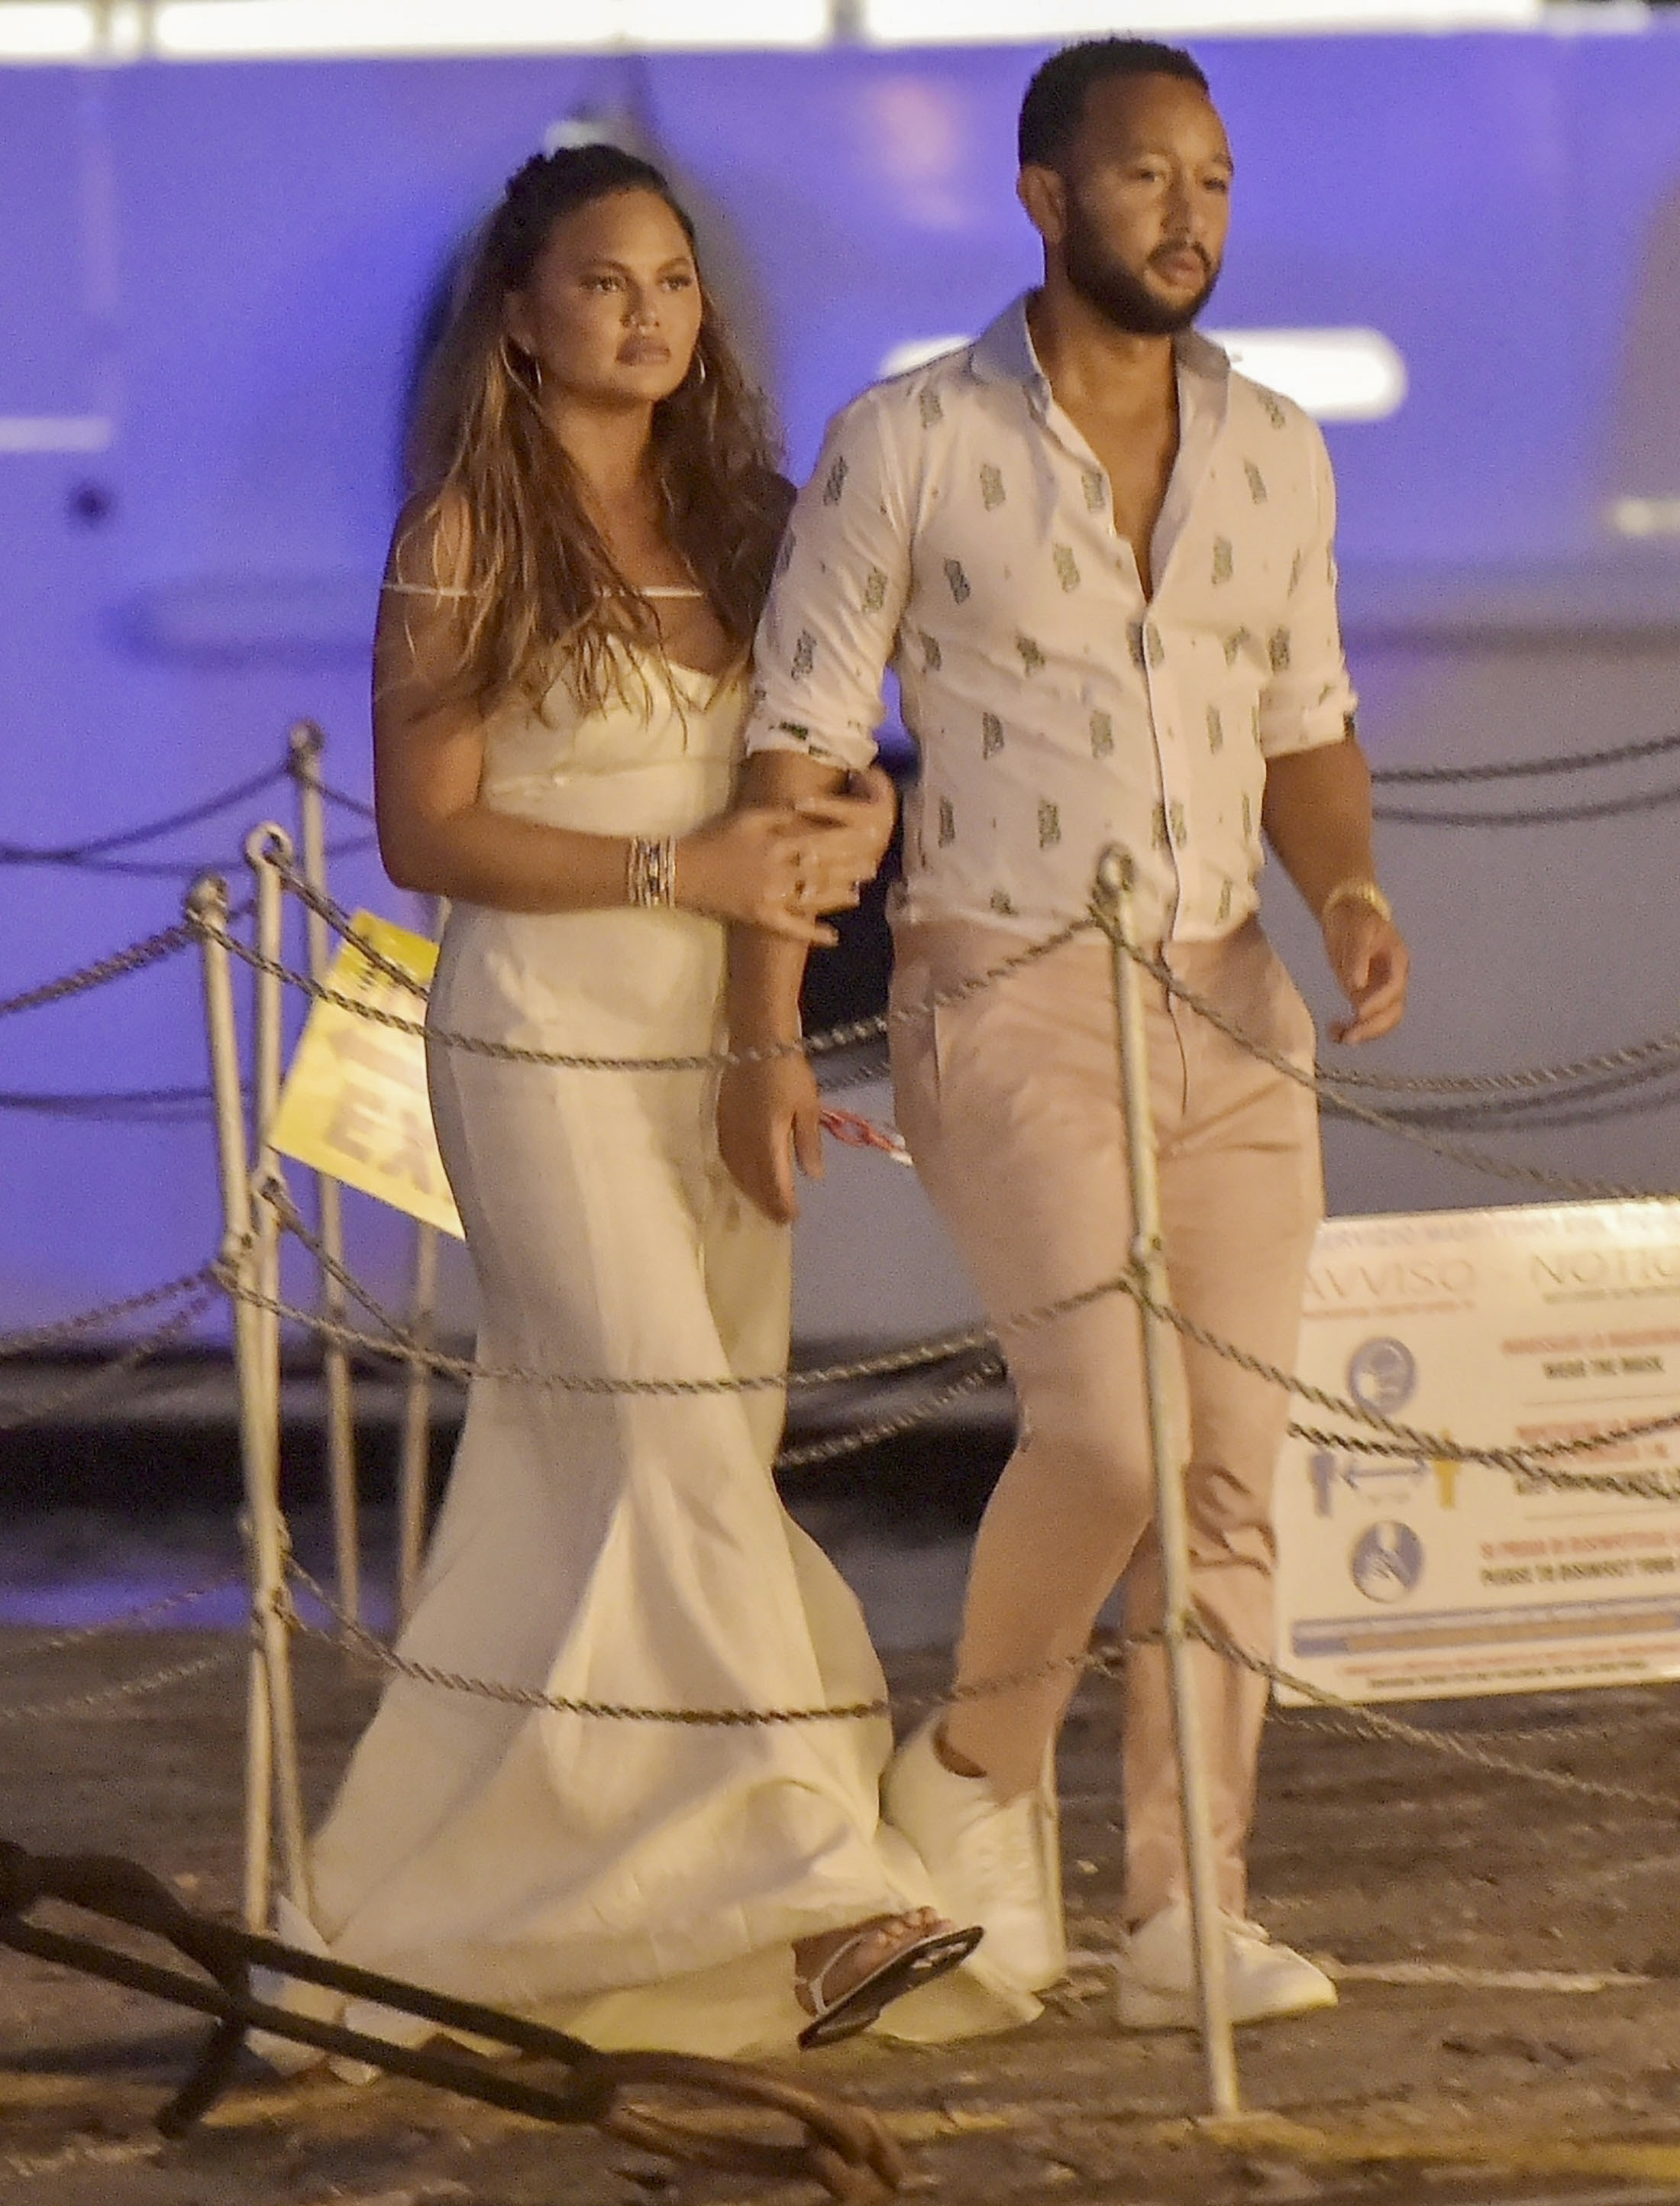 Chrissy Teigen y John Legend fueron fotografiados durante una romántica salida en Portofino, Italia. Ella lució un vestido largo blanco mientras que él optó por un pantalón clarito y una camisa estampada